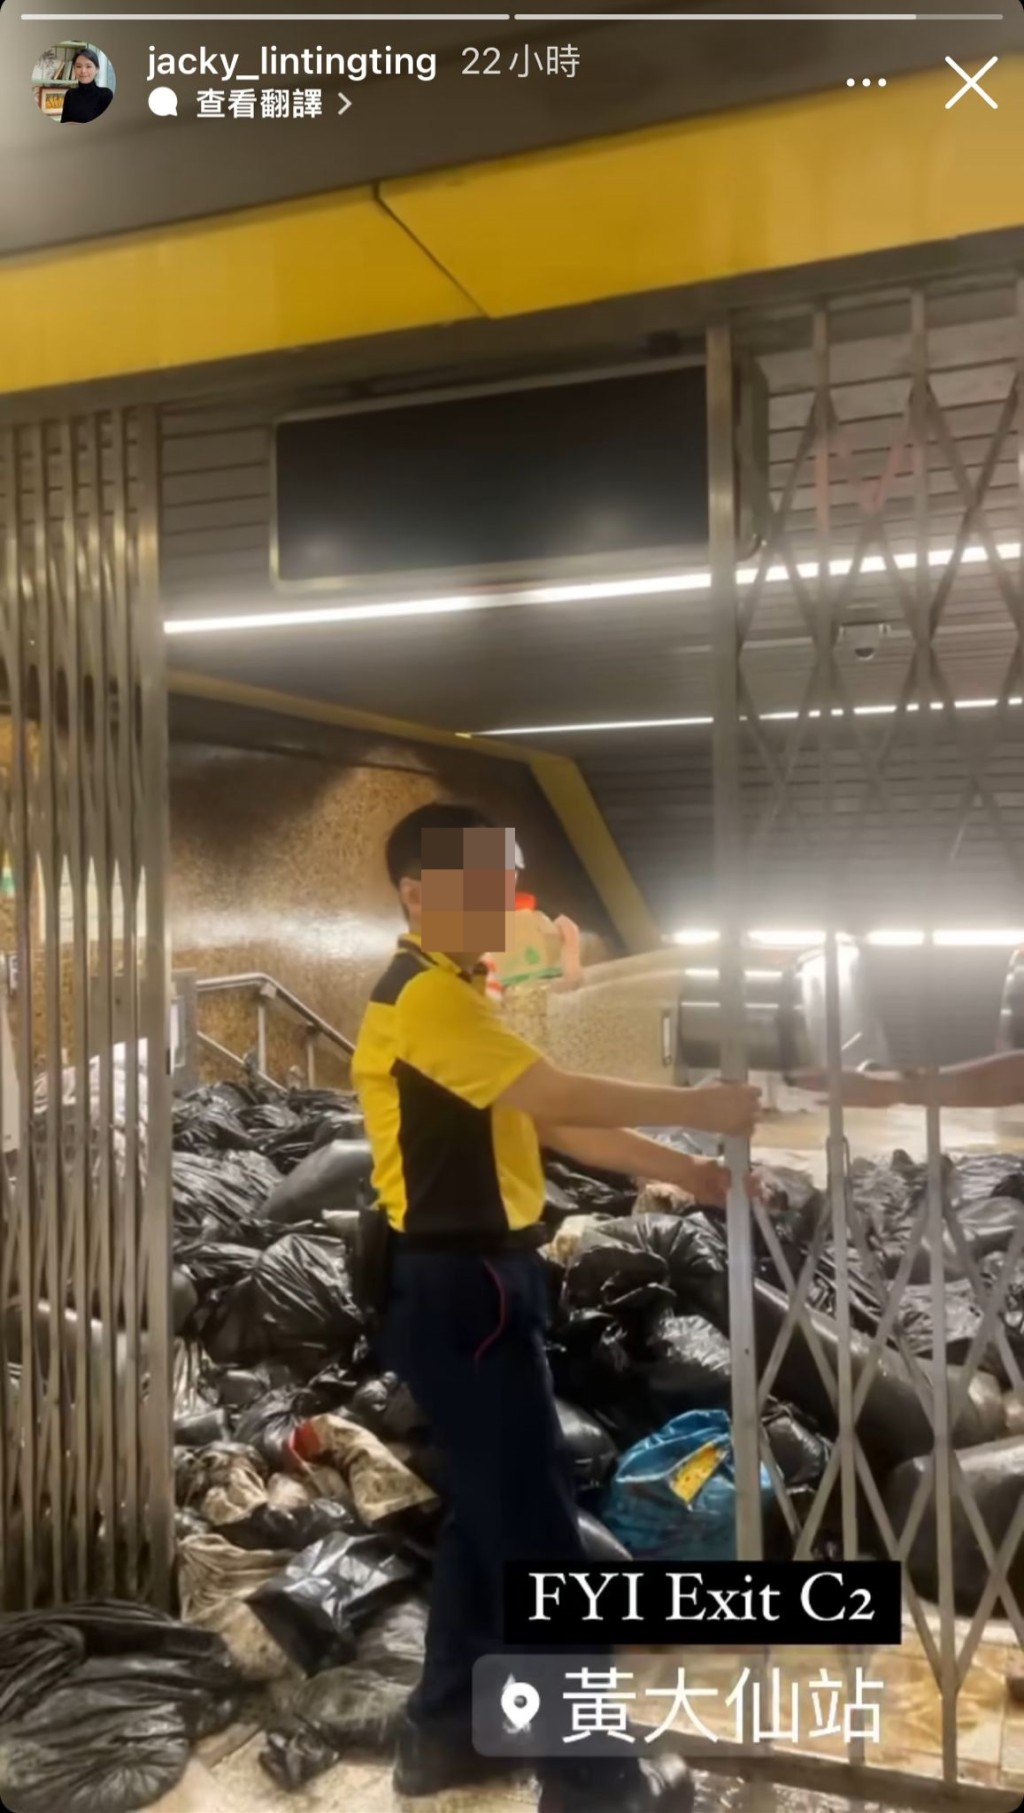 另一影片中，一名港鐵職員正為黃大仙站C2出口拉上鐵閘，站內堆滿大量黑色垃圾袋，地上亦有不少泥沙，滿目瘡痍。